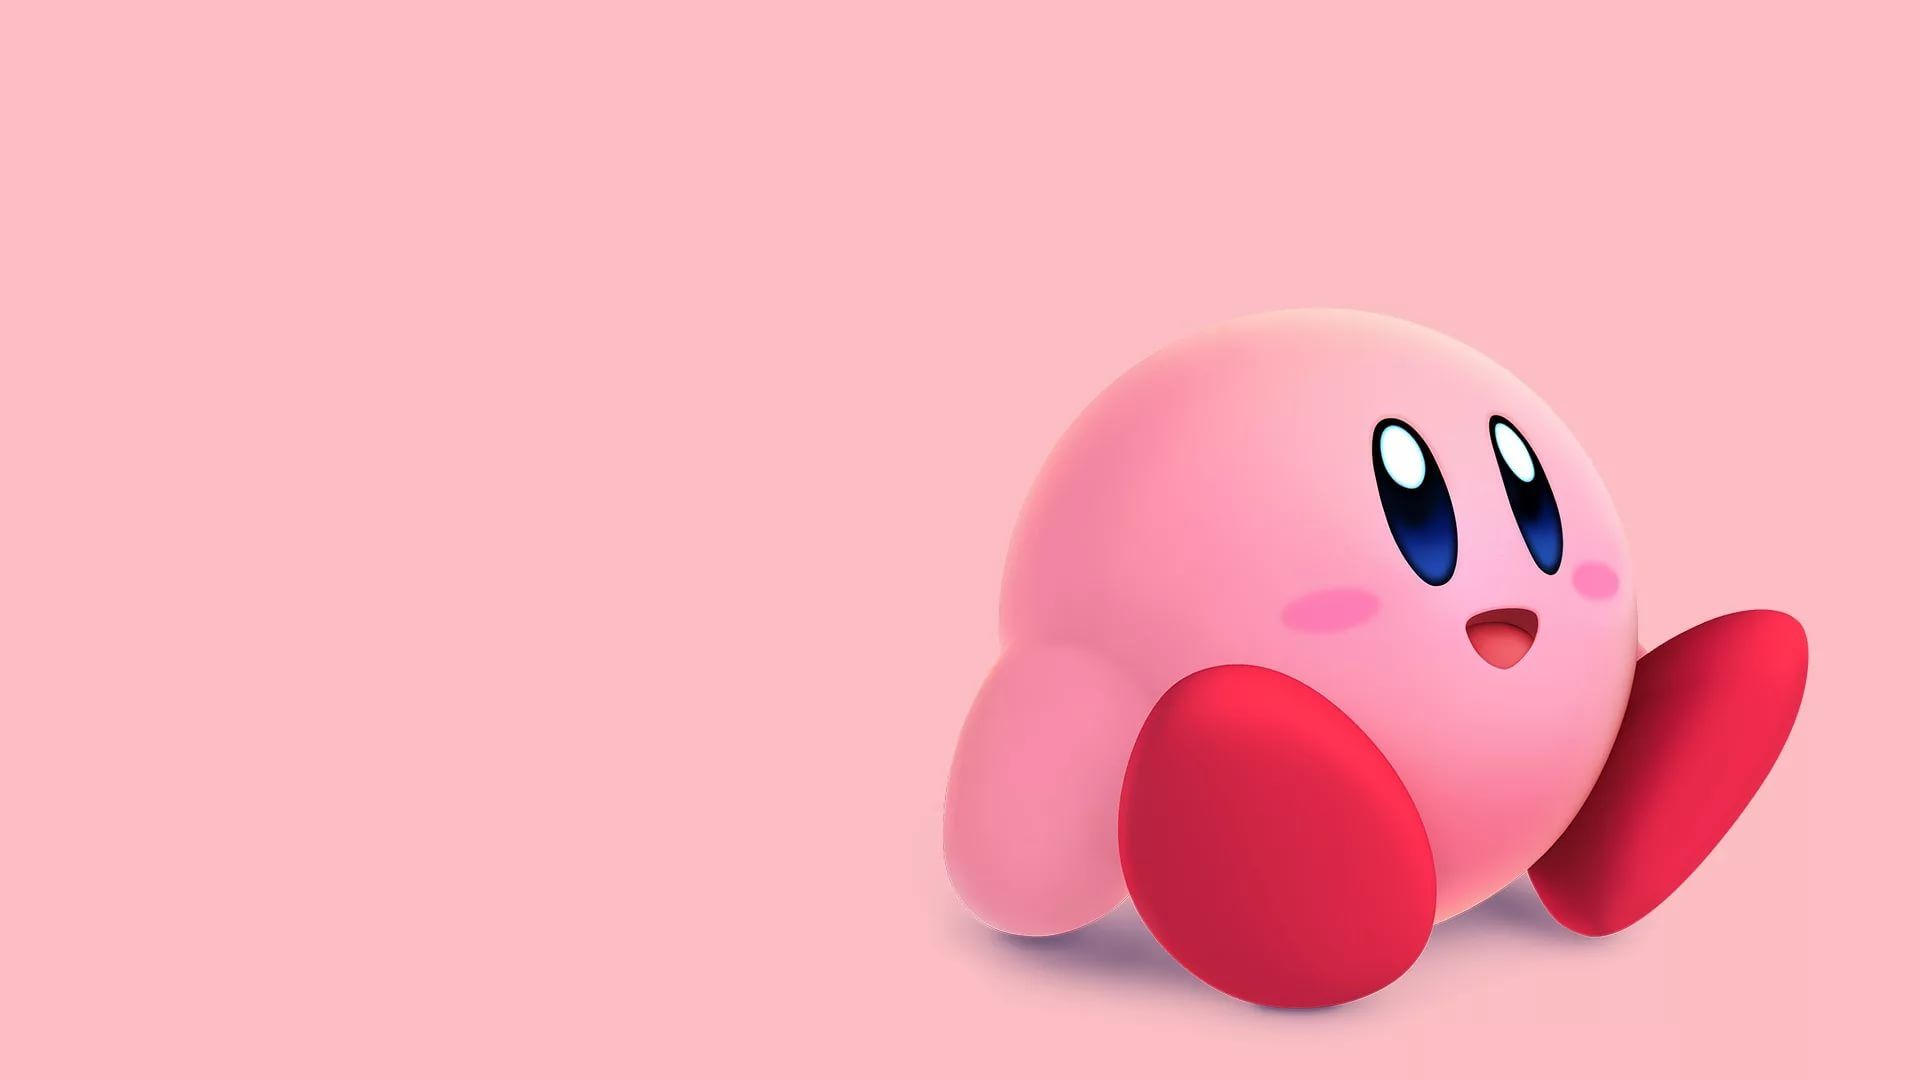 Với một fan của Kirby, không thể thiếu được các hình nền đáng yêu và độc đáo về chú nhân vật ngộ nghĩnh này. Wallpaper Cave là kho tài nguyên hoàn hảo cho bạn tìm kiếm những hình nền yêu thích nhất, đẹp mắt nhất về Kirby. Cùng khám phá và tải về ngay thôi!